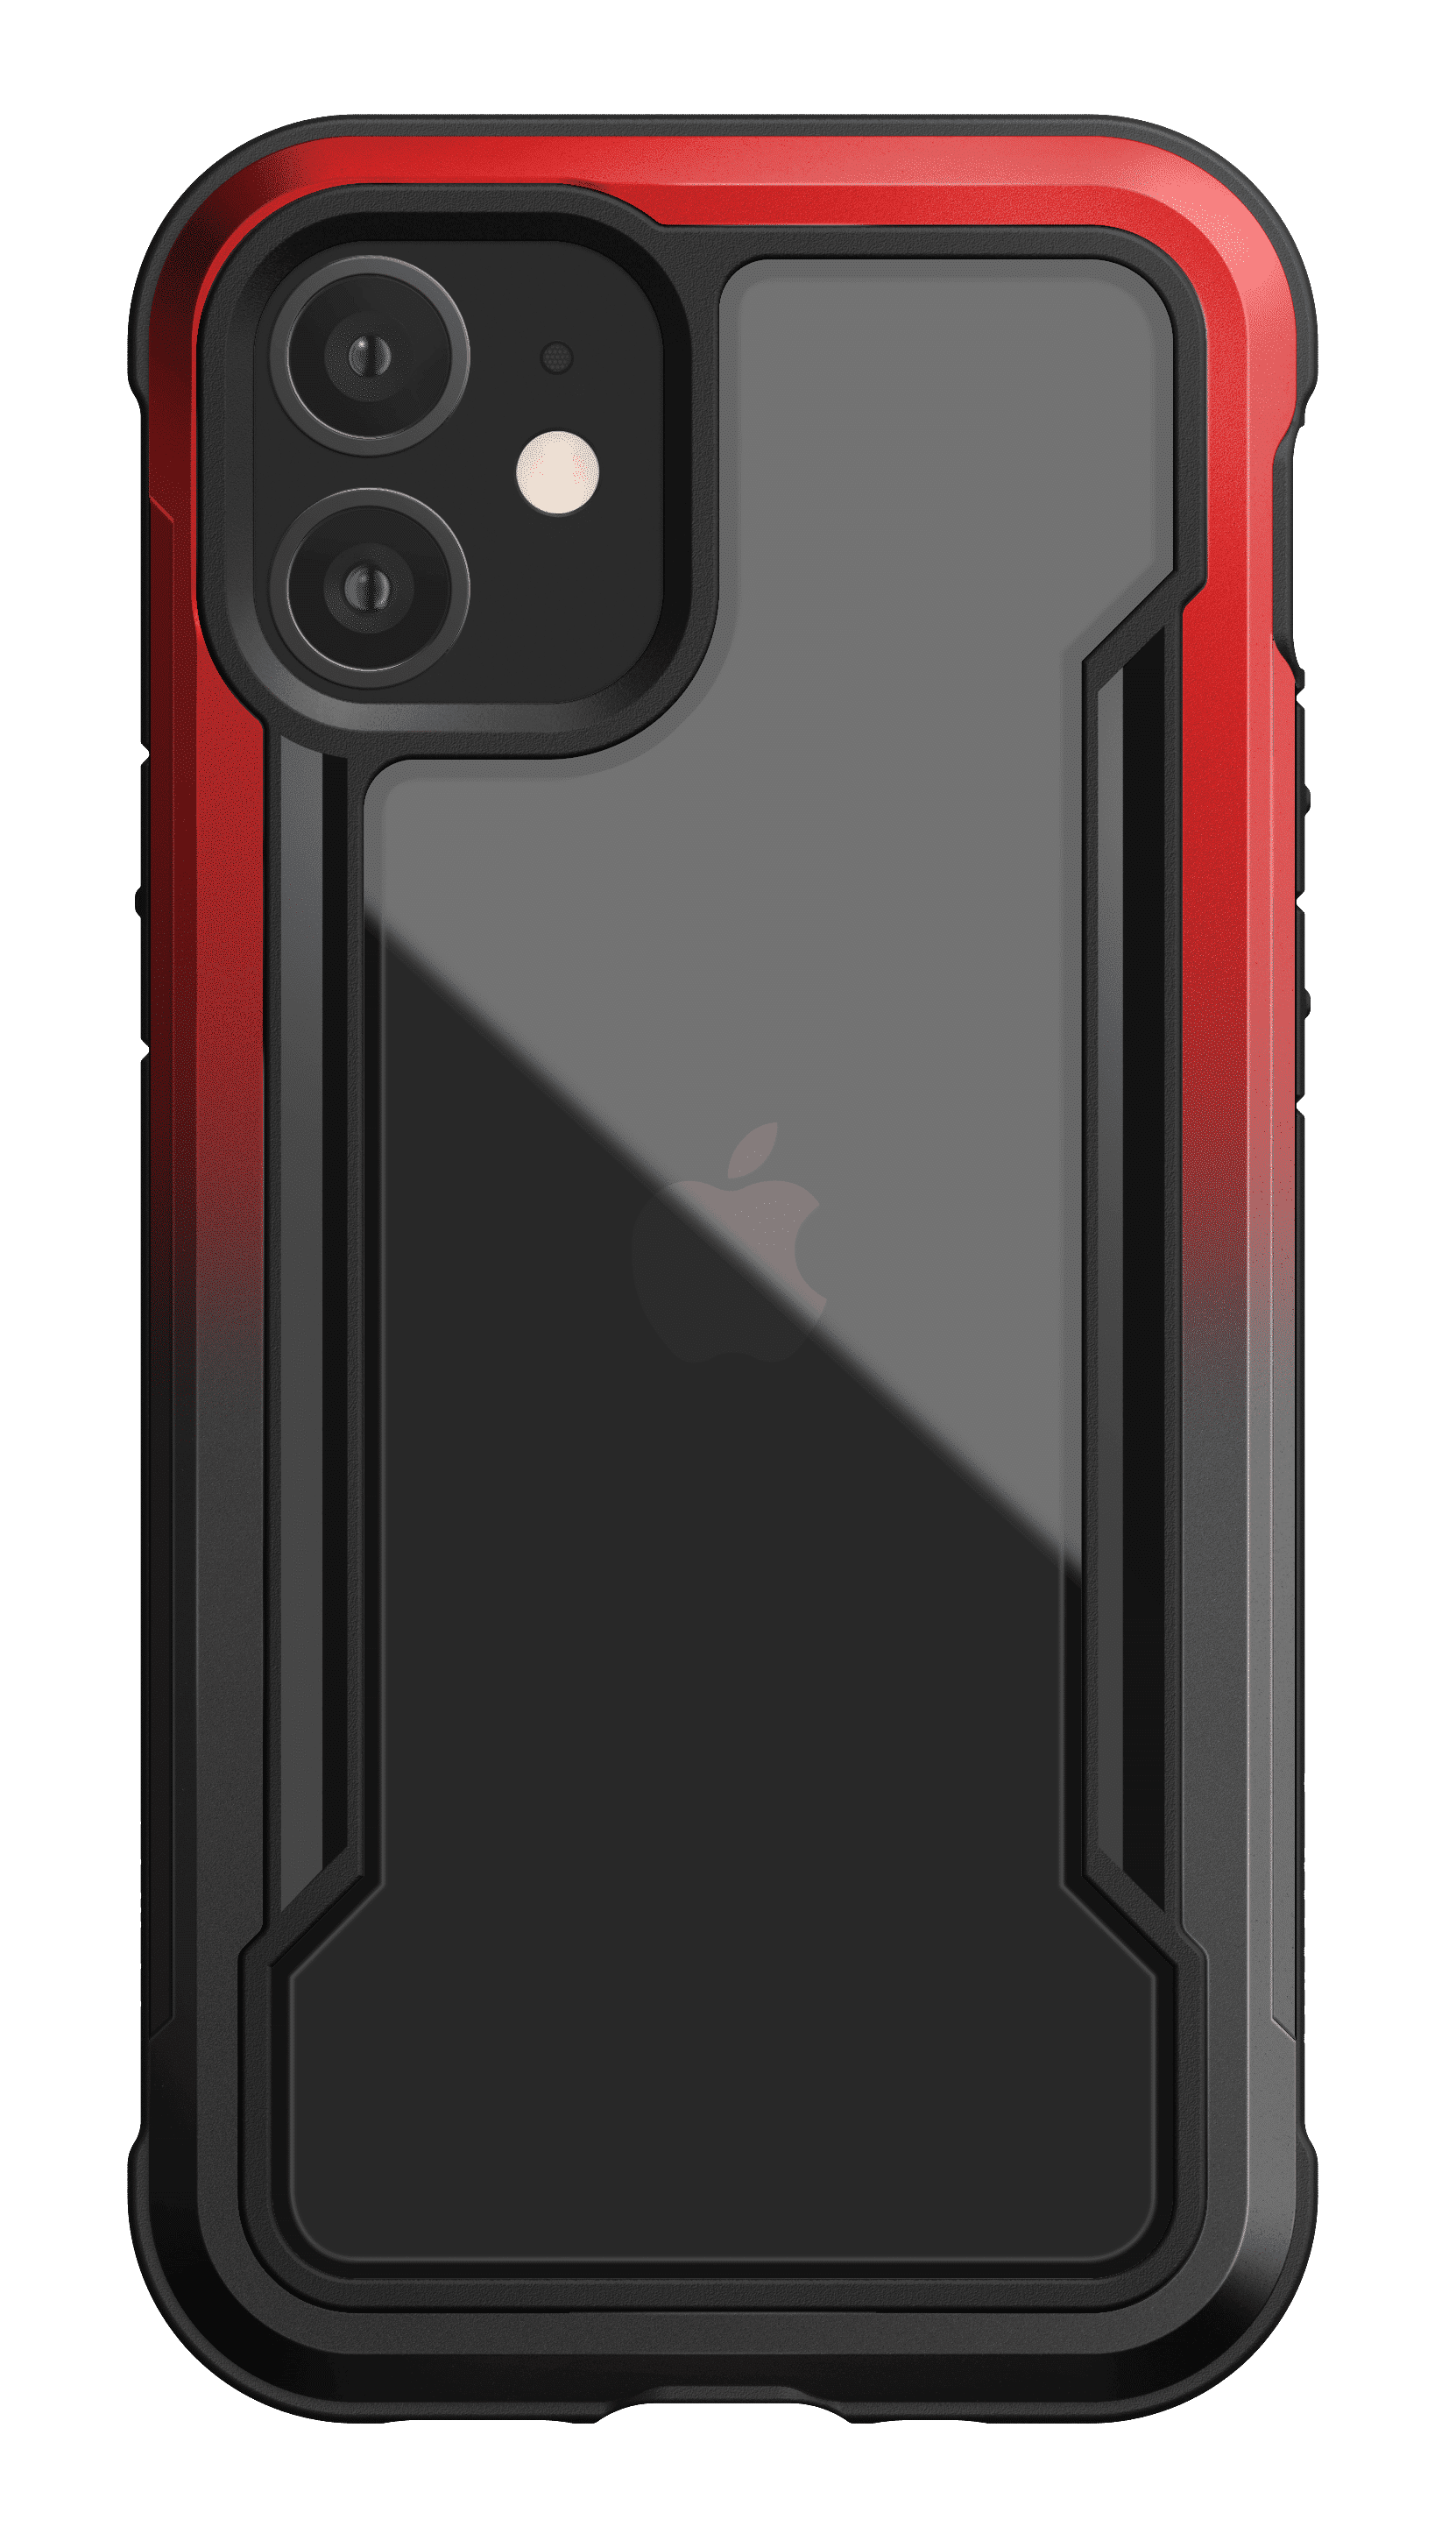 เคส X-Doria รุ่น Raptic Shield - iPhone 12 / 12 Pro - ไล่สีดำ/แดง